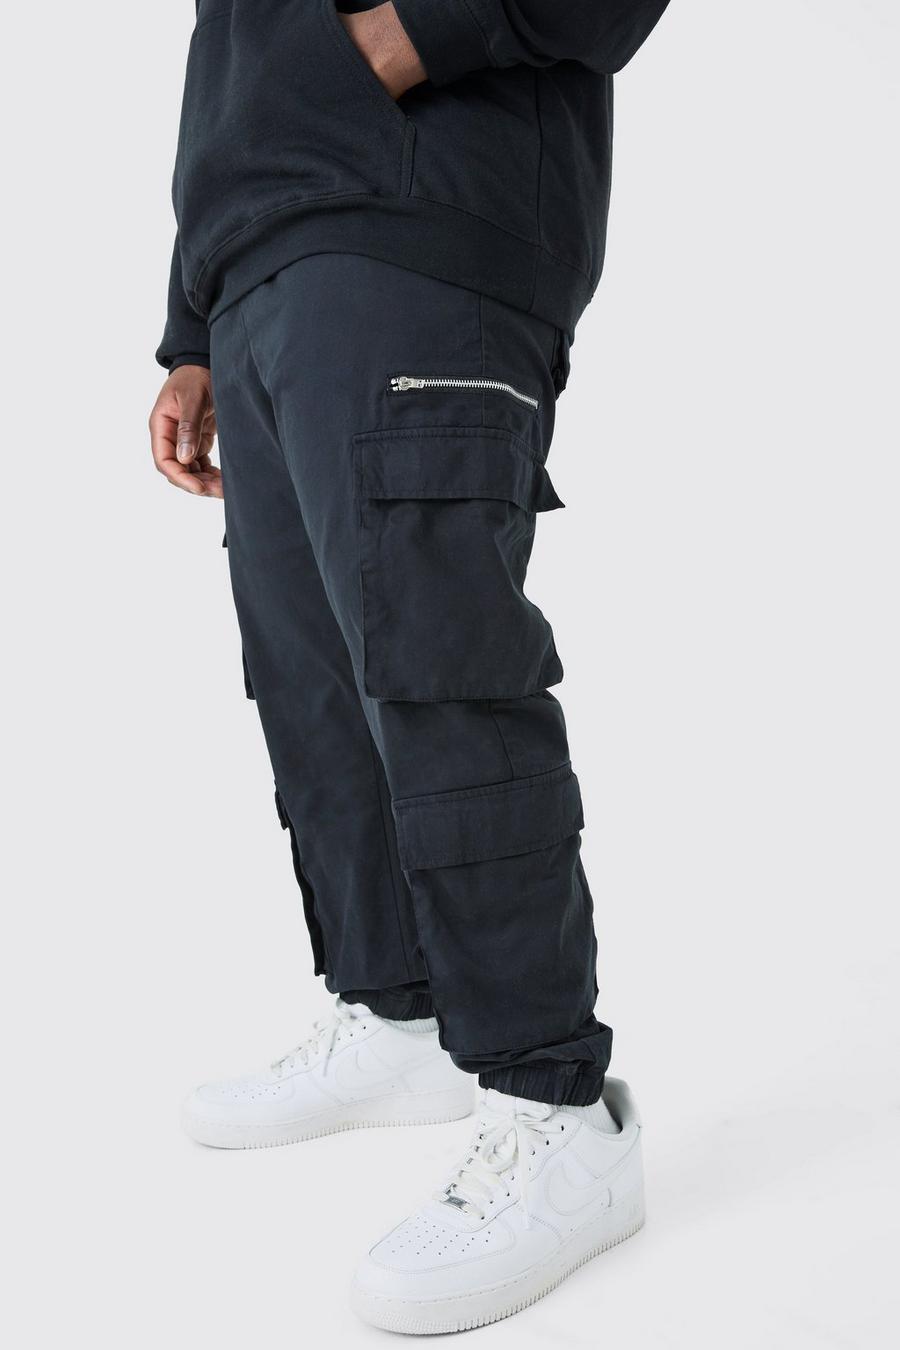 Pantalón Plus ajustado cargo con cordón elástico extendido, Black image number 1